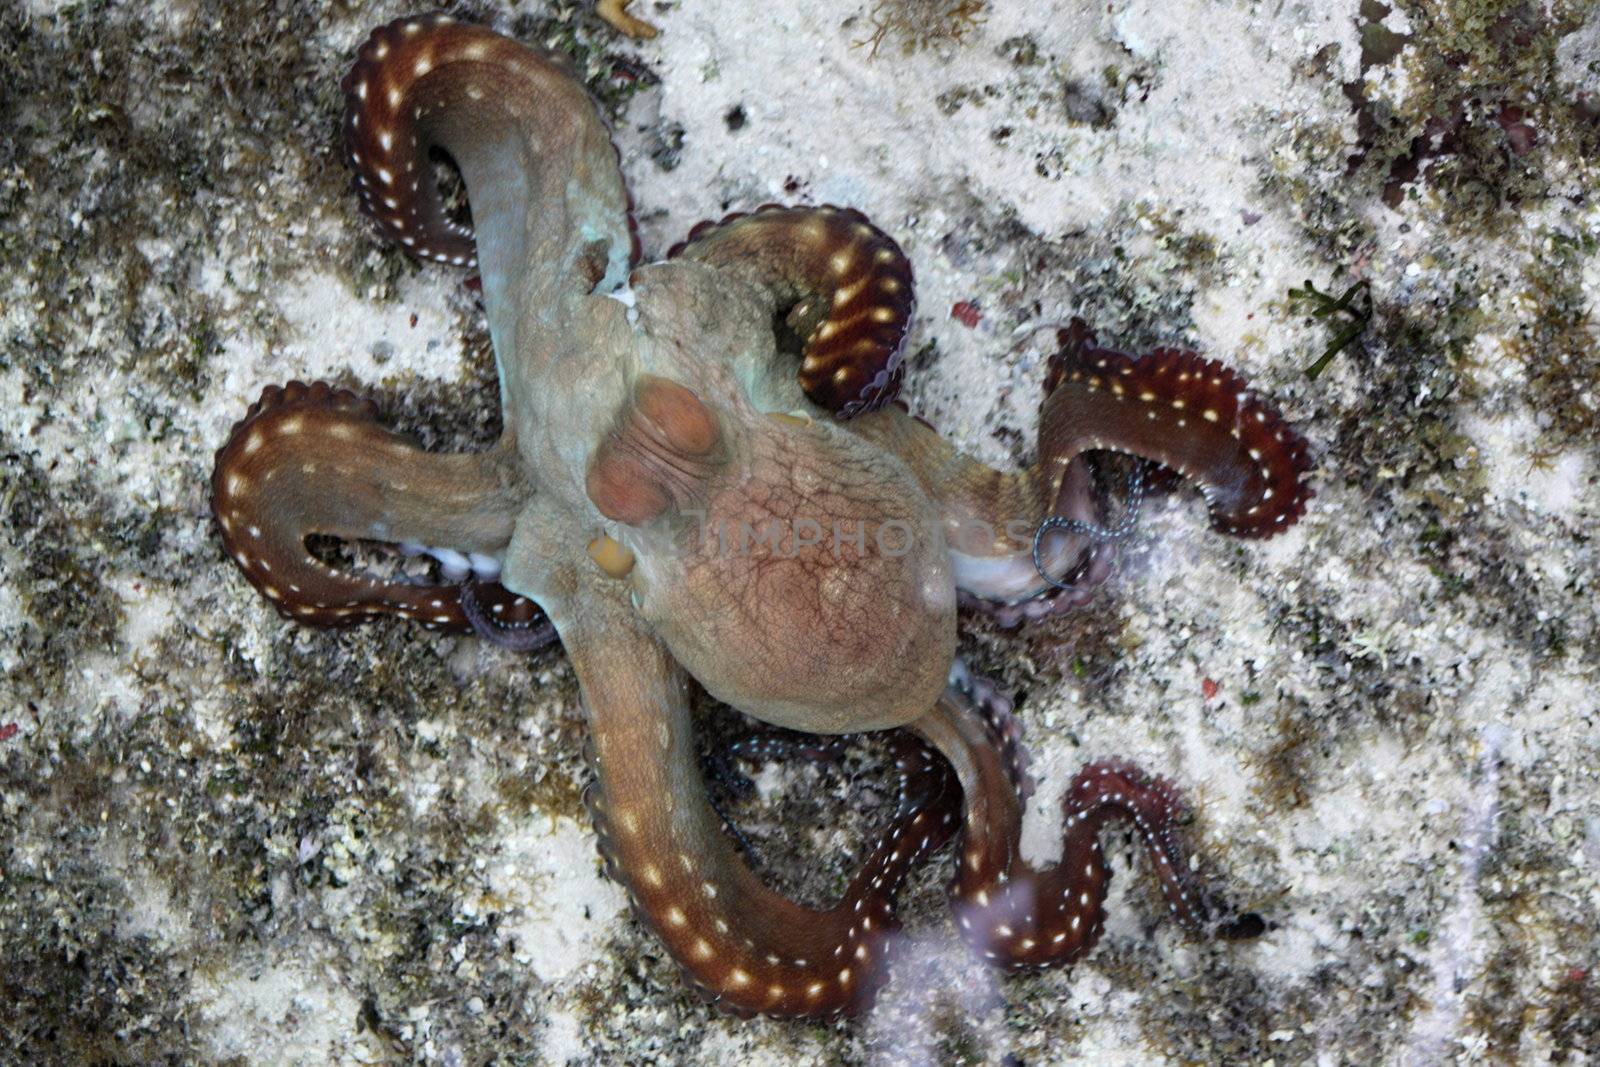 Brown octopus by jnerad